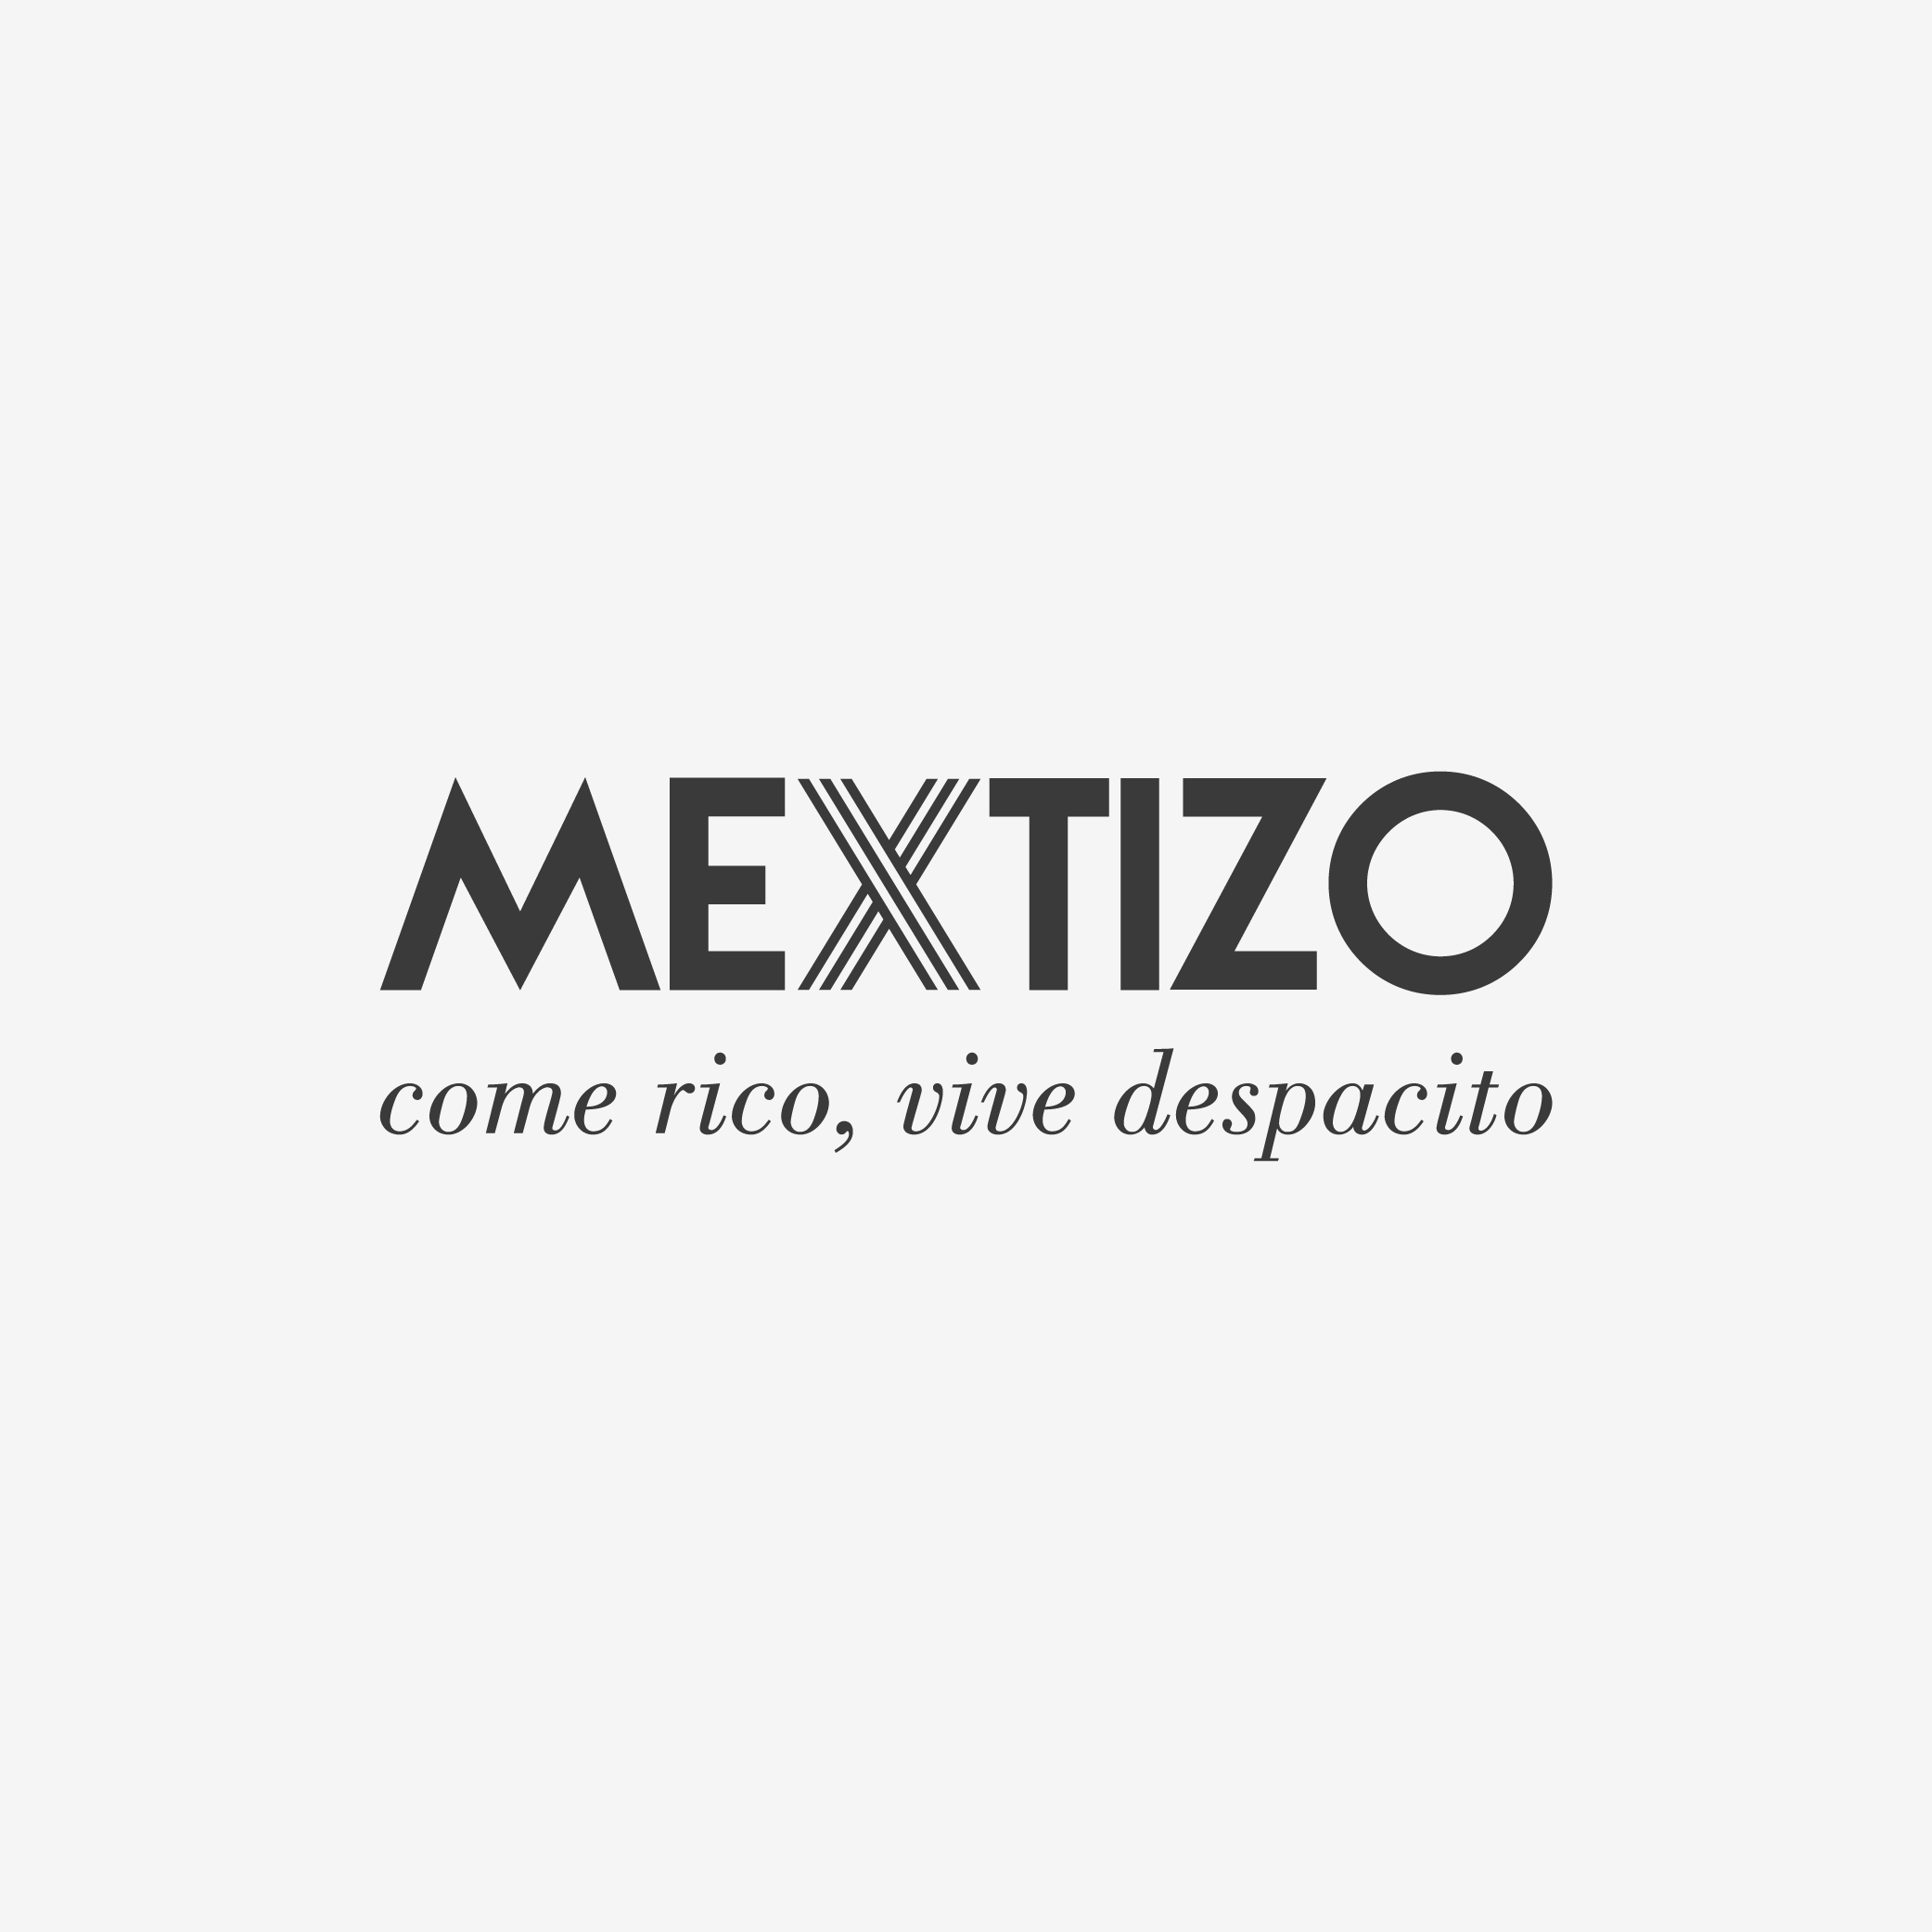 Mextizo